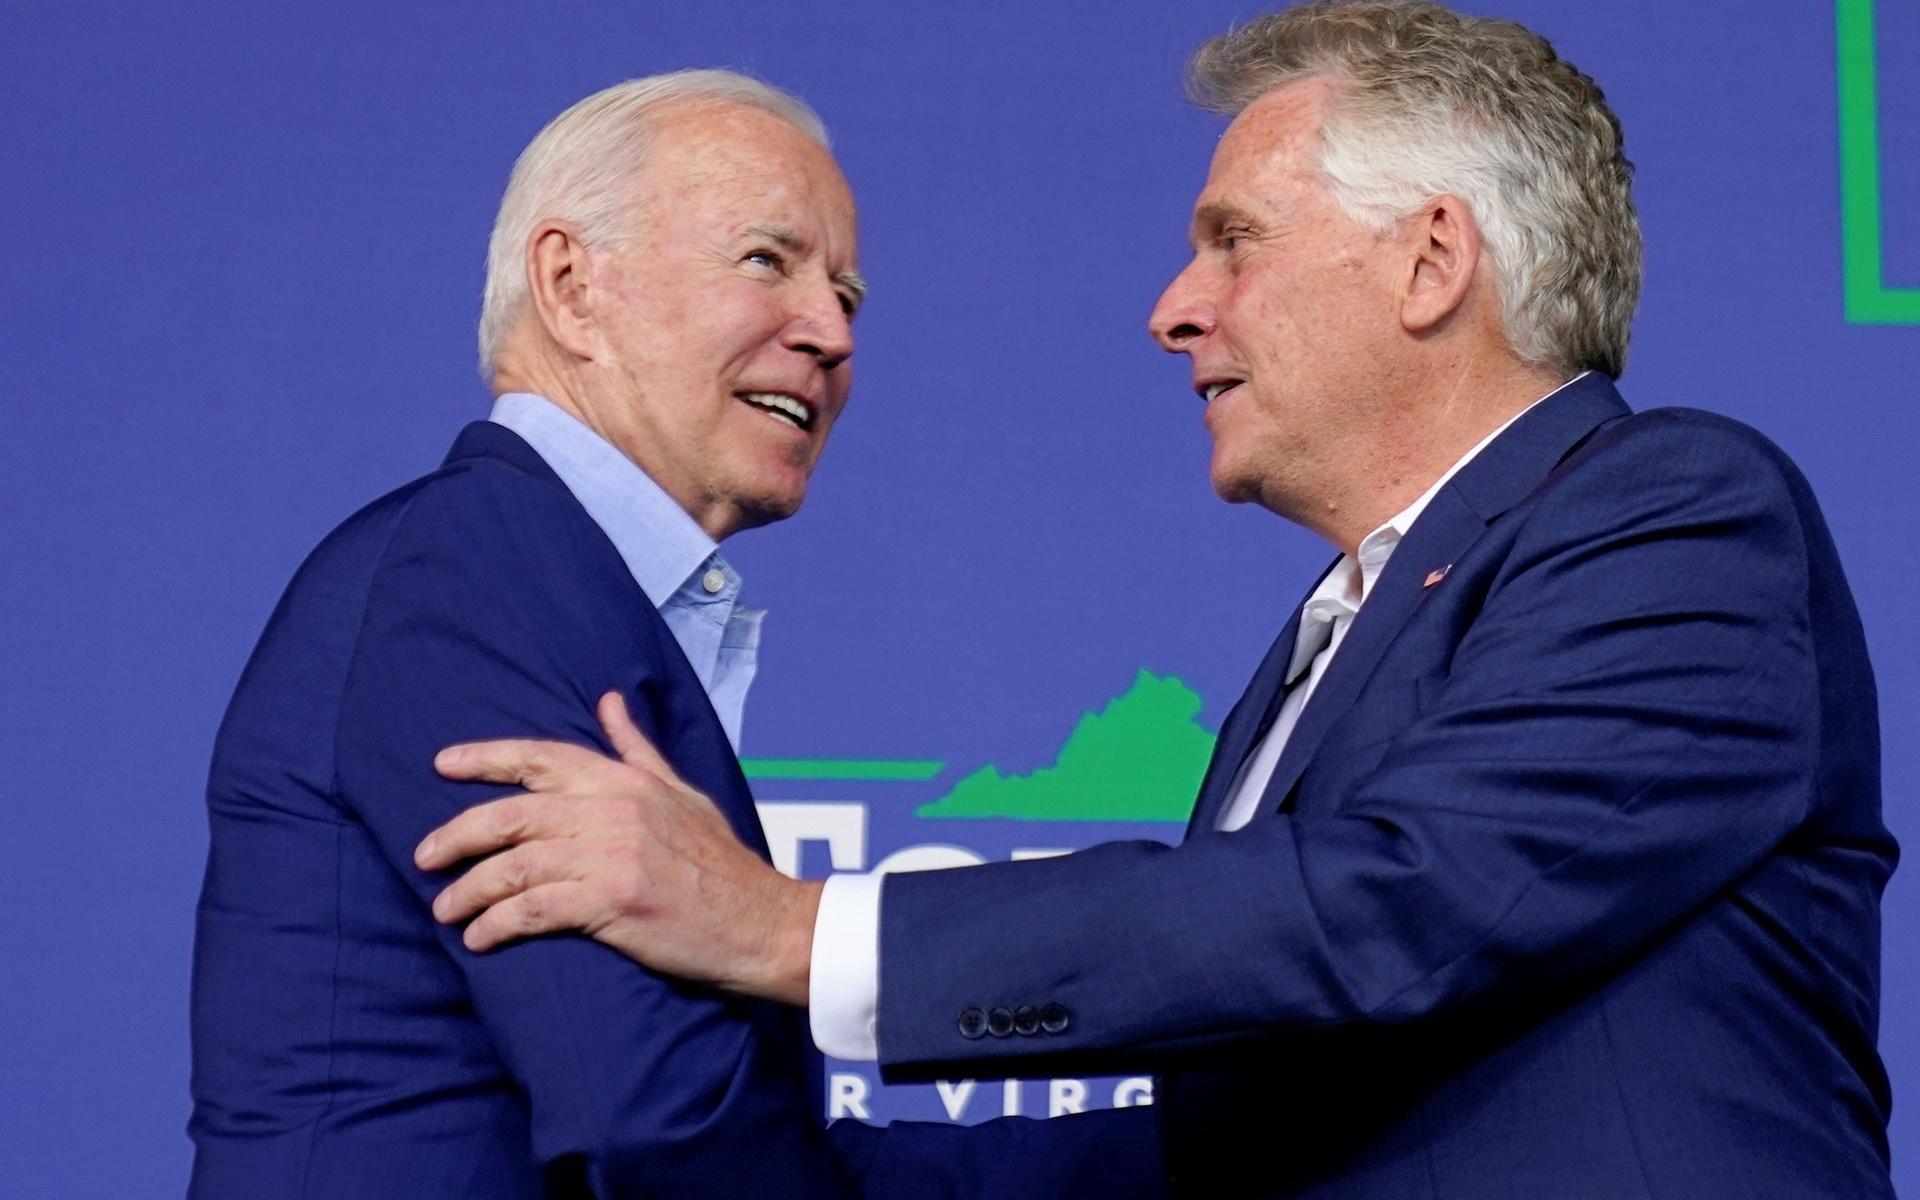 President Joe Biden och Terry McAuliffe under ett kampanjmöte i Virginia.